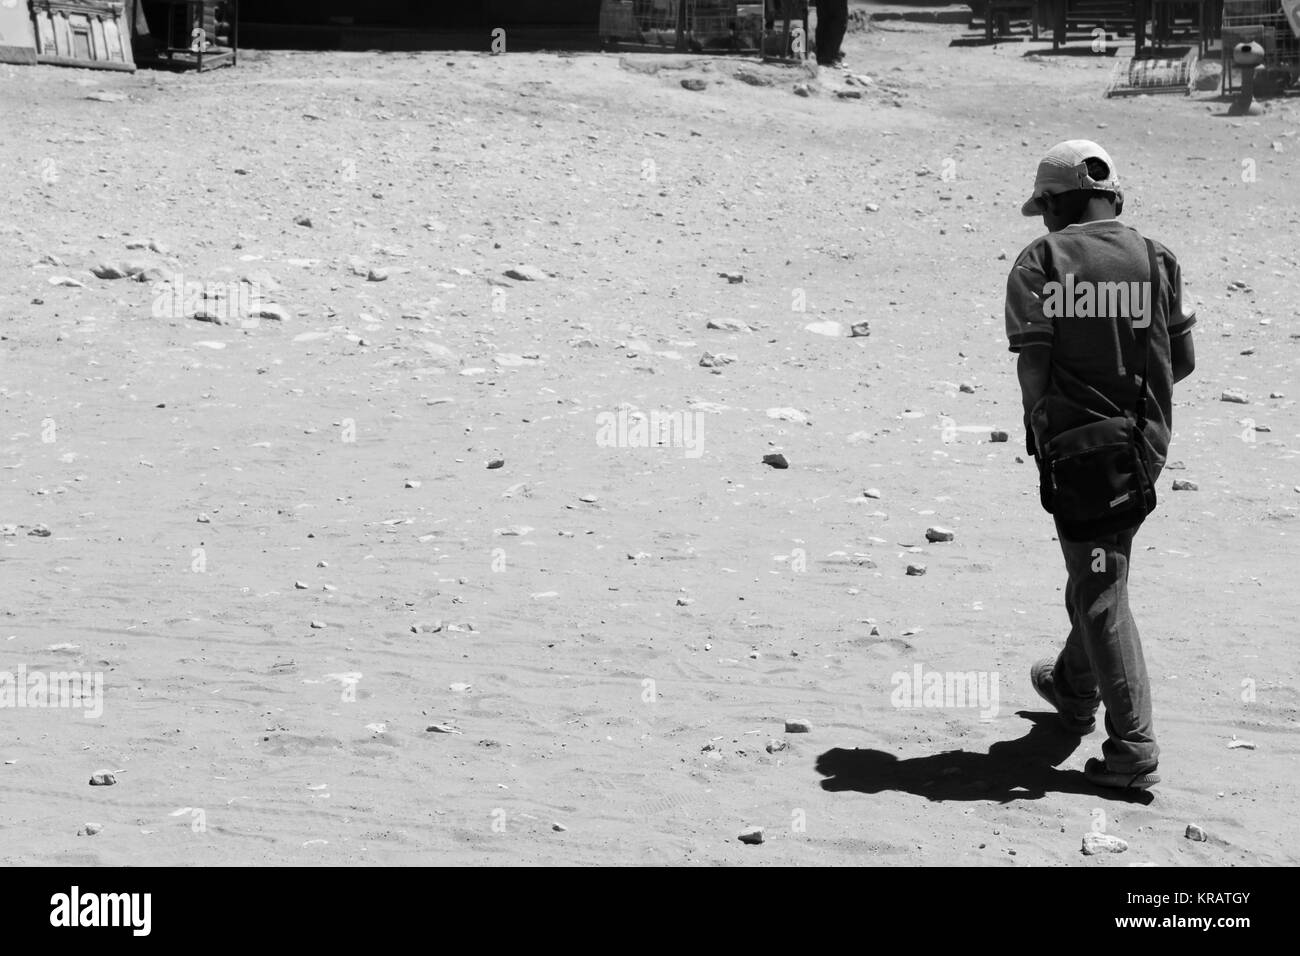 Enfant triste à Petra - 20/05/2017 - Jordanie / Amman - Sguardi Aridi par Ali Raffaele Matar tourné en mai 2017 - destin sans espoir d'enfants du désert Banque D'Images